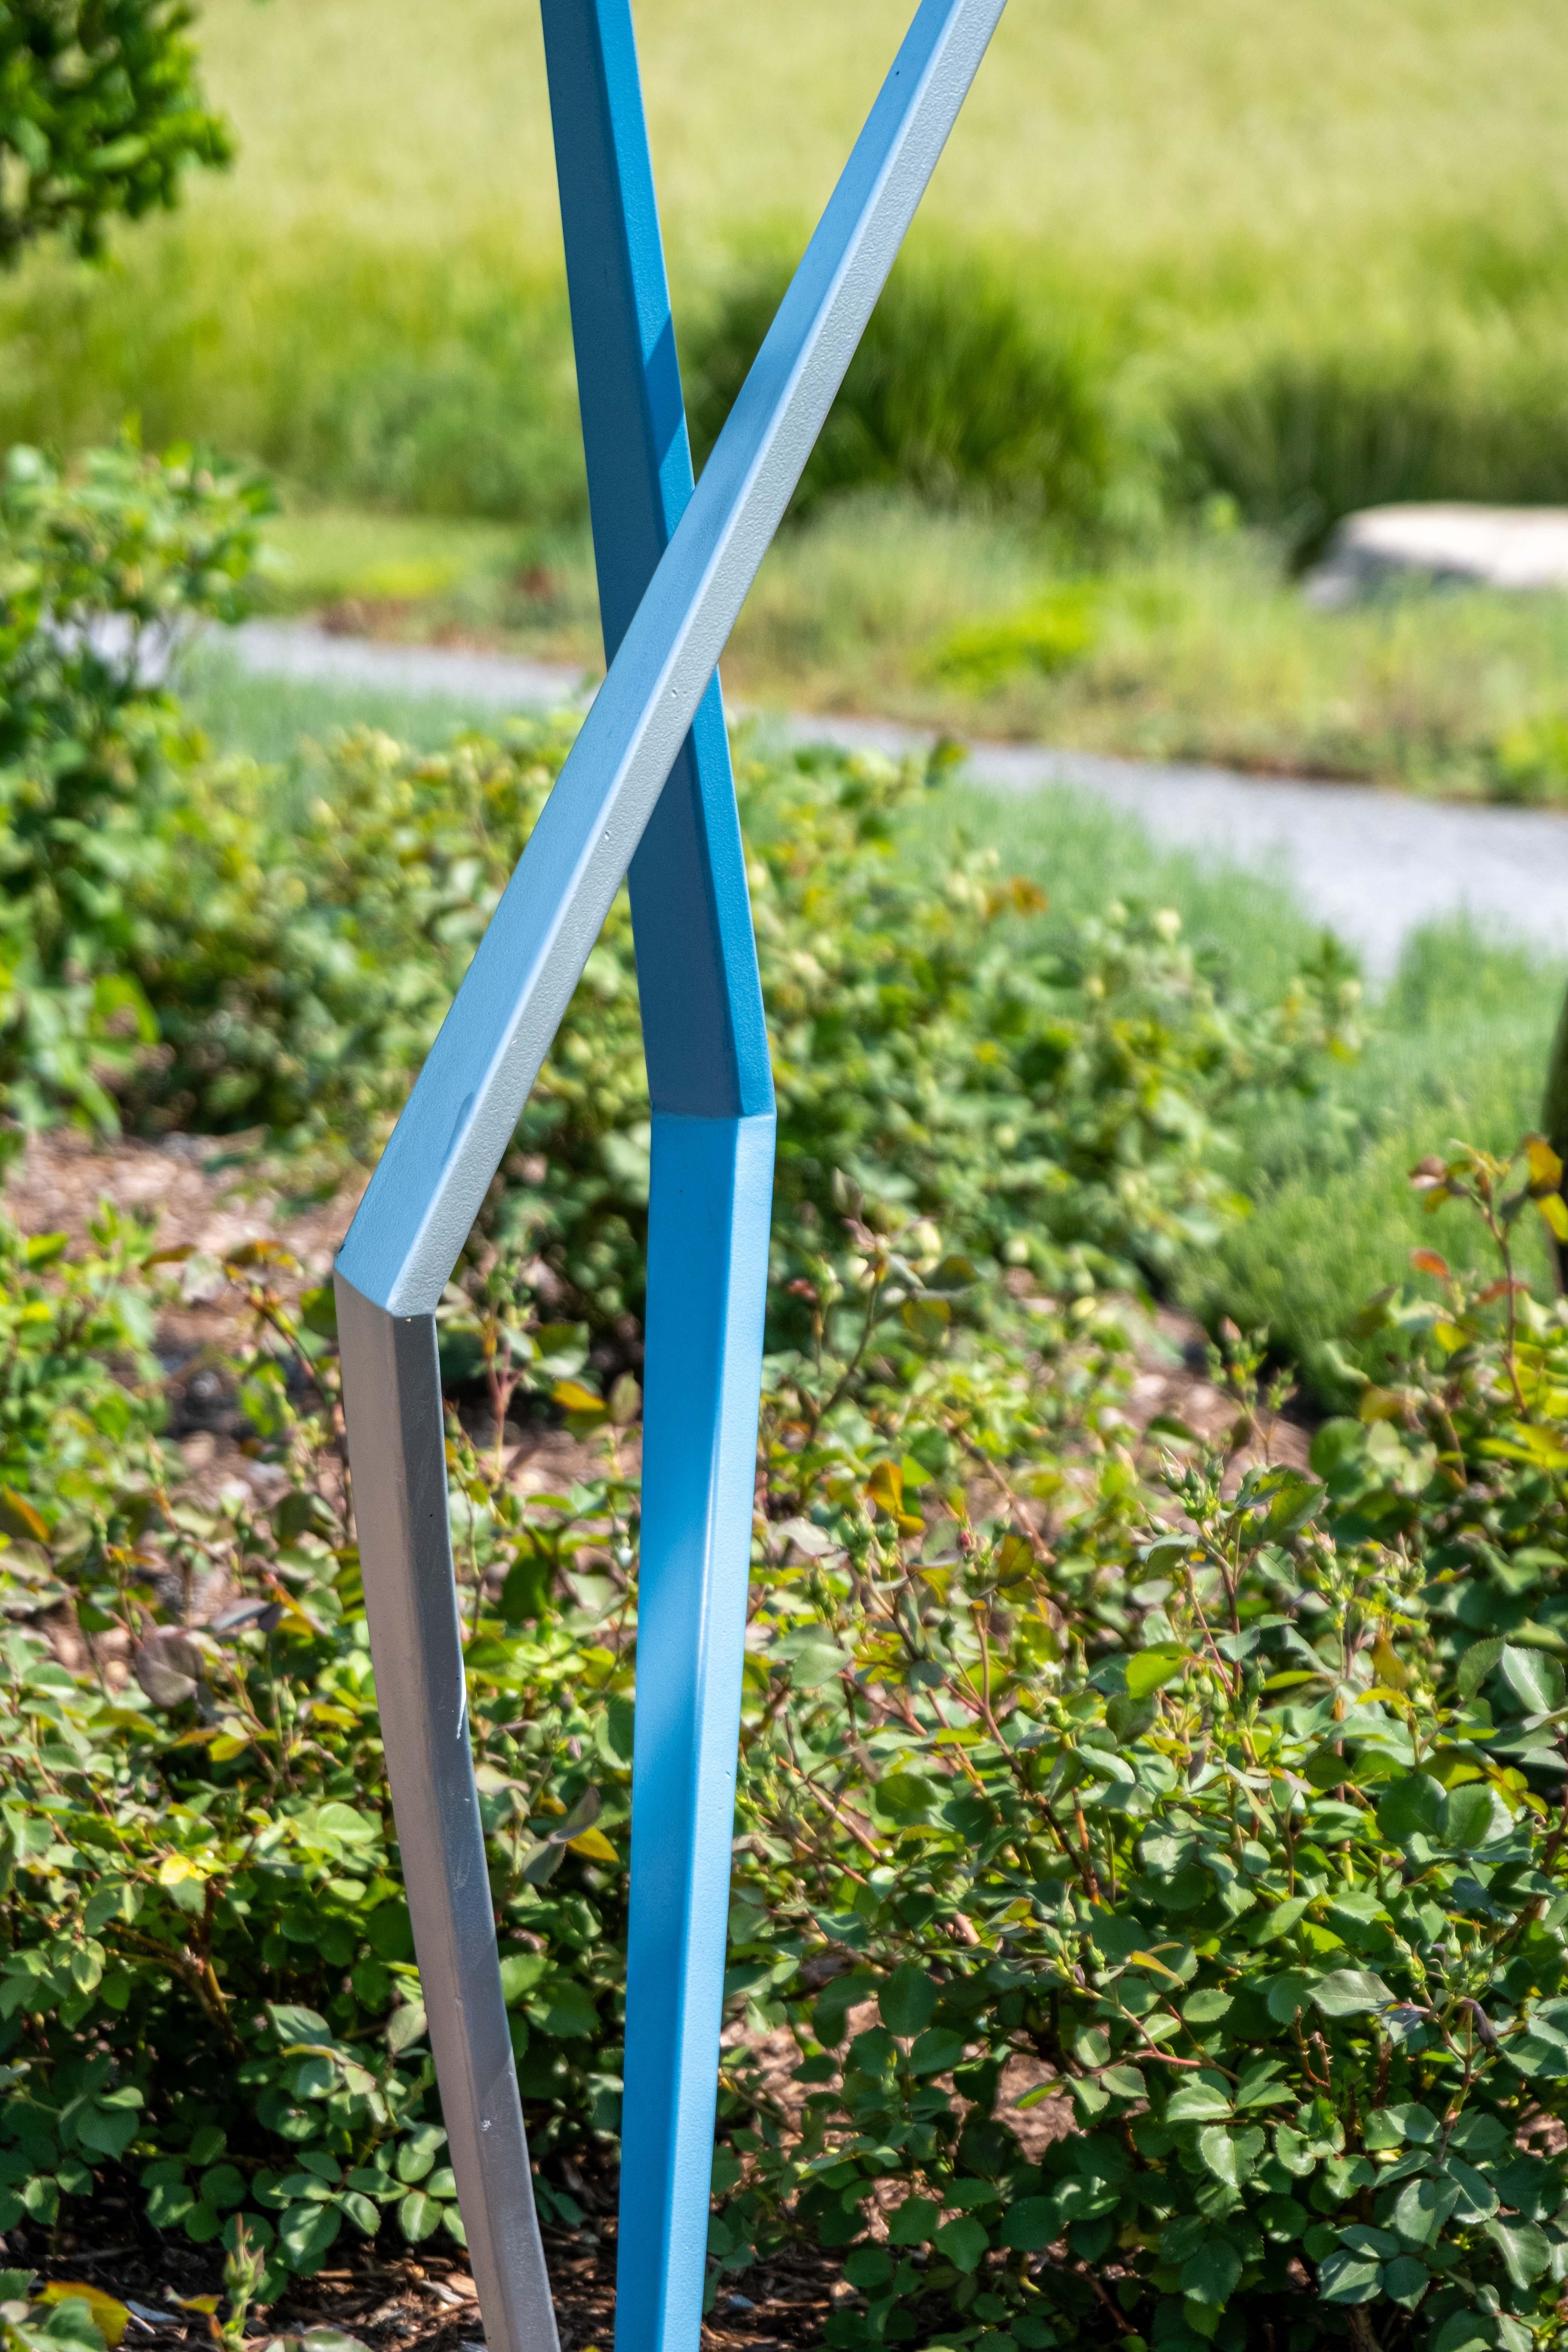 Kräftige, klare Linien und lebhafte Farben ziehen den Blick des Betrachters auf diese minimalistische Skulptur von Robert Clarke-Ellis. Der Künstler aus Toronto schafft ausdrucksstarke, aus Stahl geschmiedete Werke. Die stäbchenförmigen Figuren in